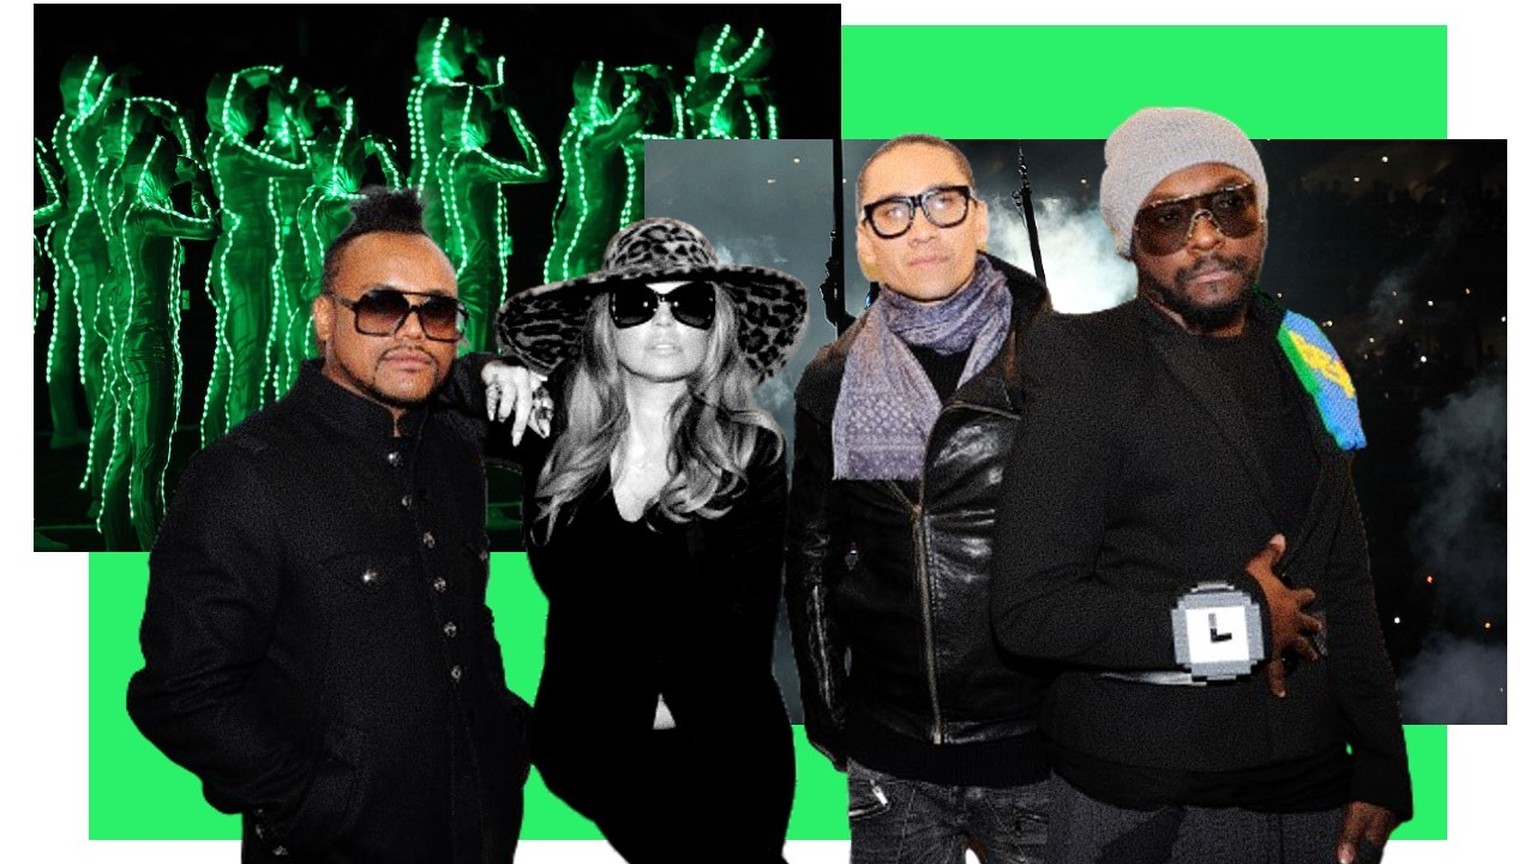 Paléo 2023: les Black Eyed Peas ont déçu. Les Black Eyed Peas se sont produits le 18 juillet 2023 sur la scène de Paléo. Que vaut le groupe sans Fergie, sa chanteuse historique? Notre avis.